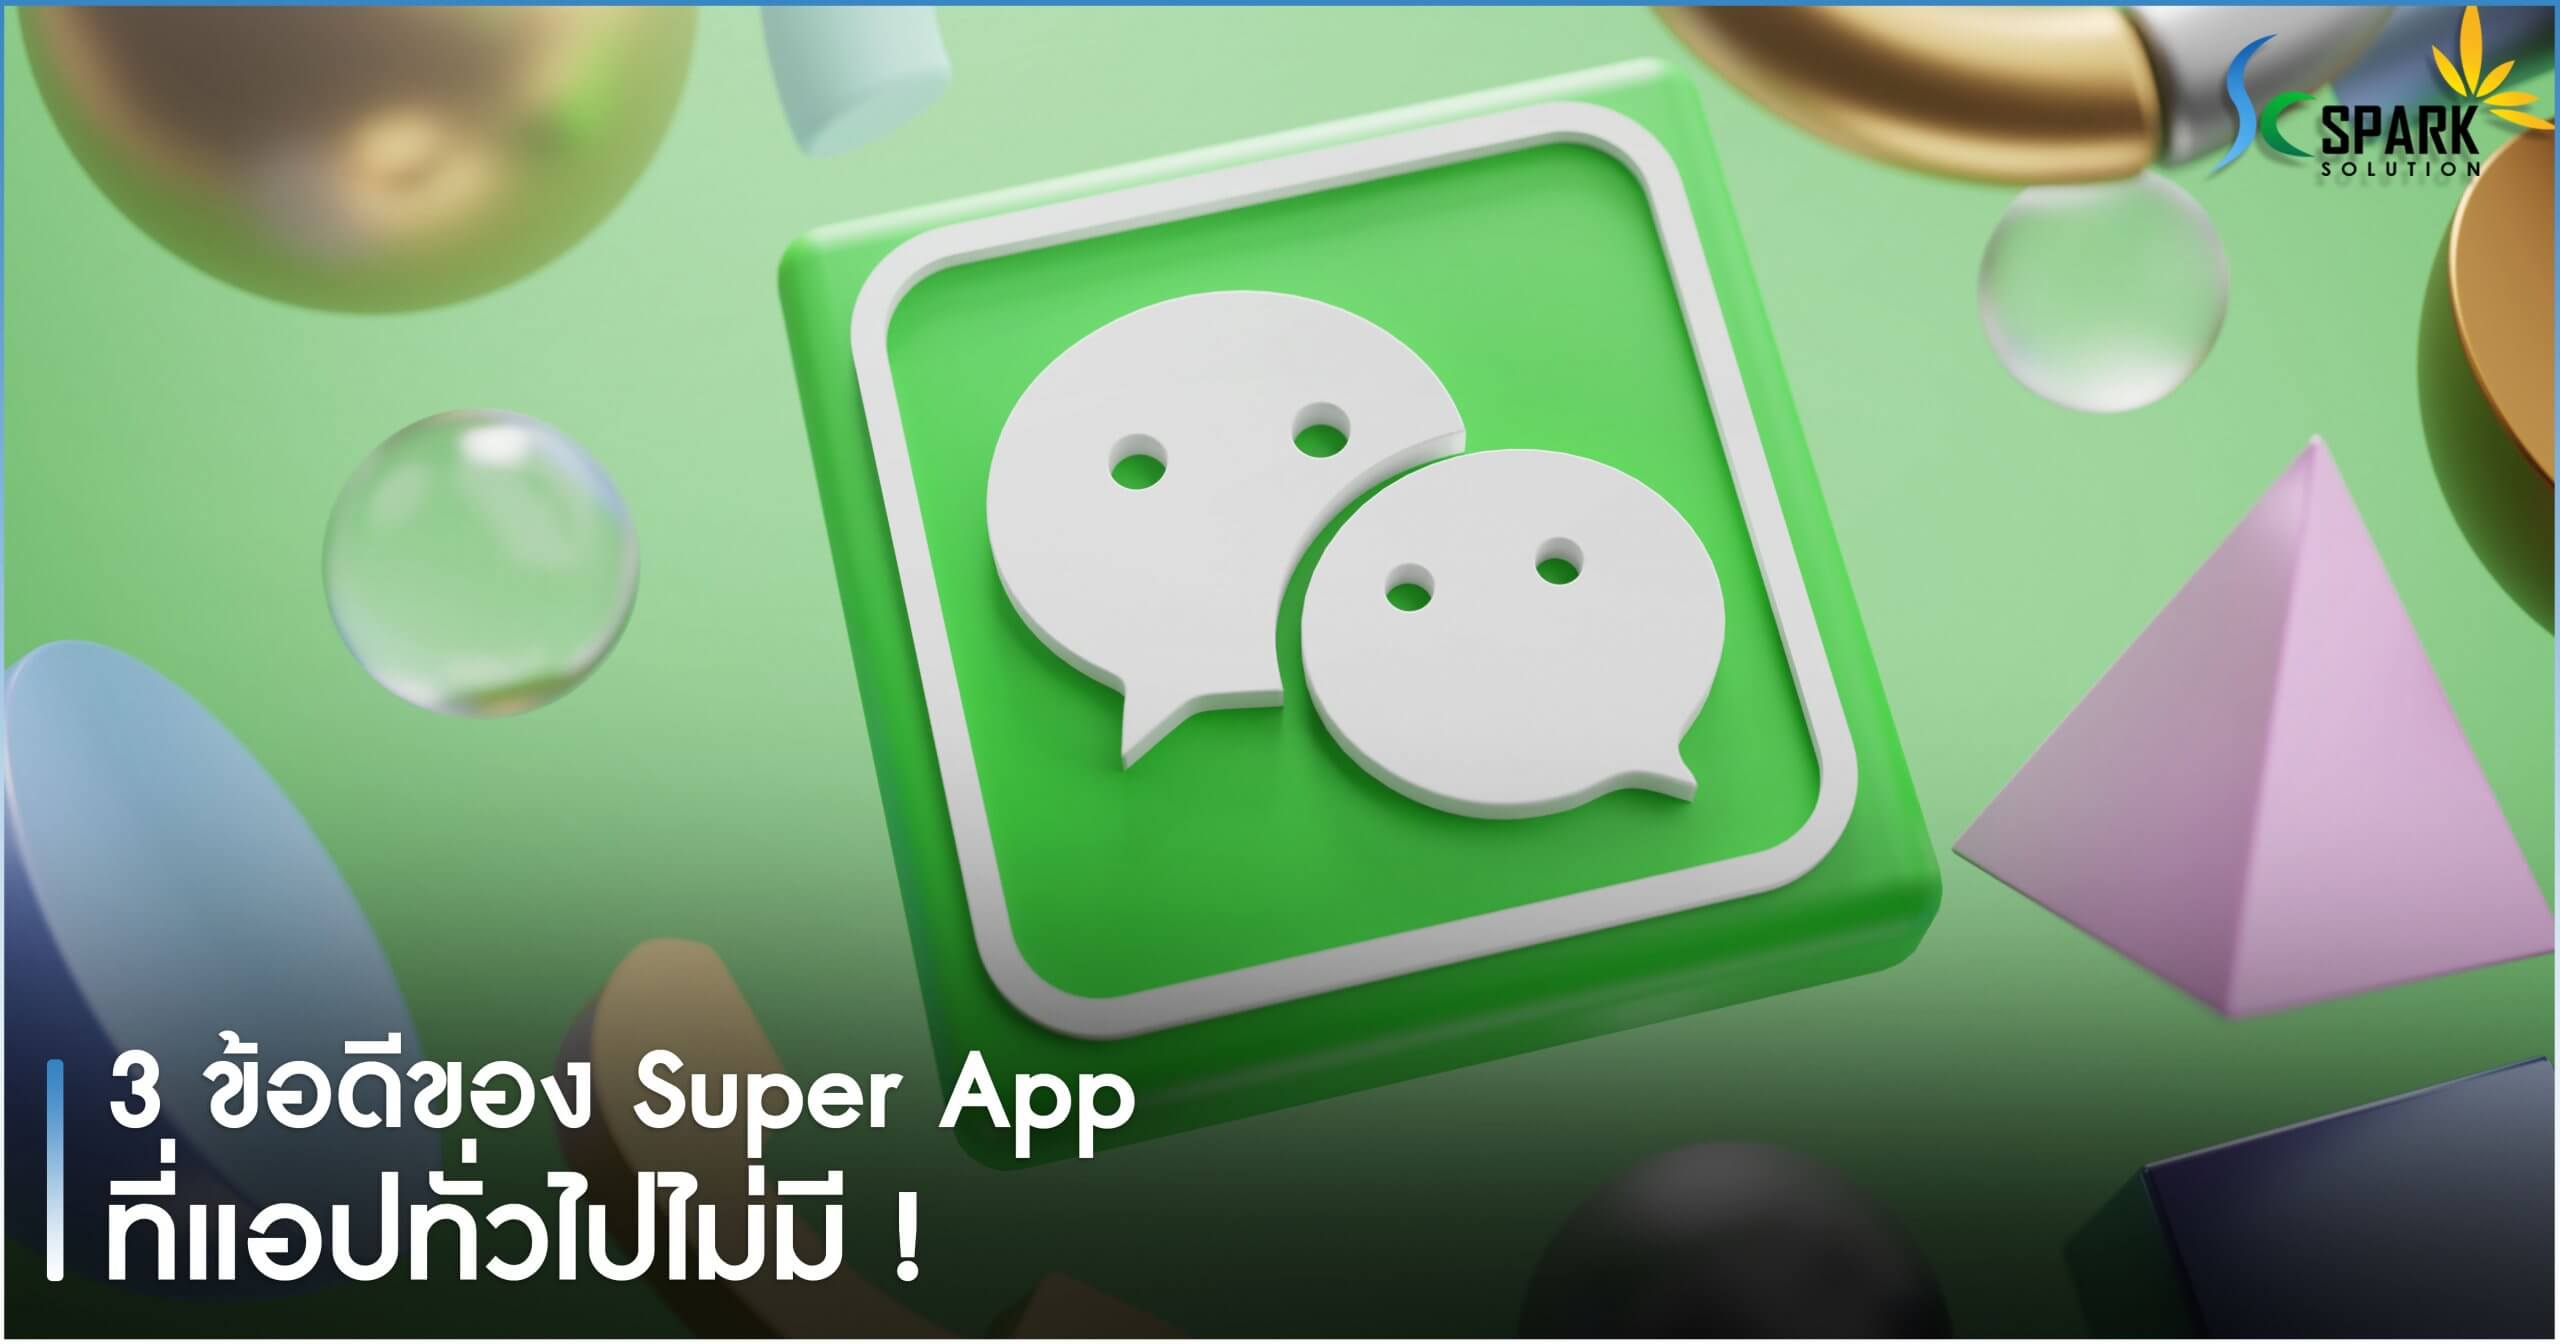 3 ข้อดีของ Super App